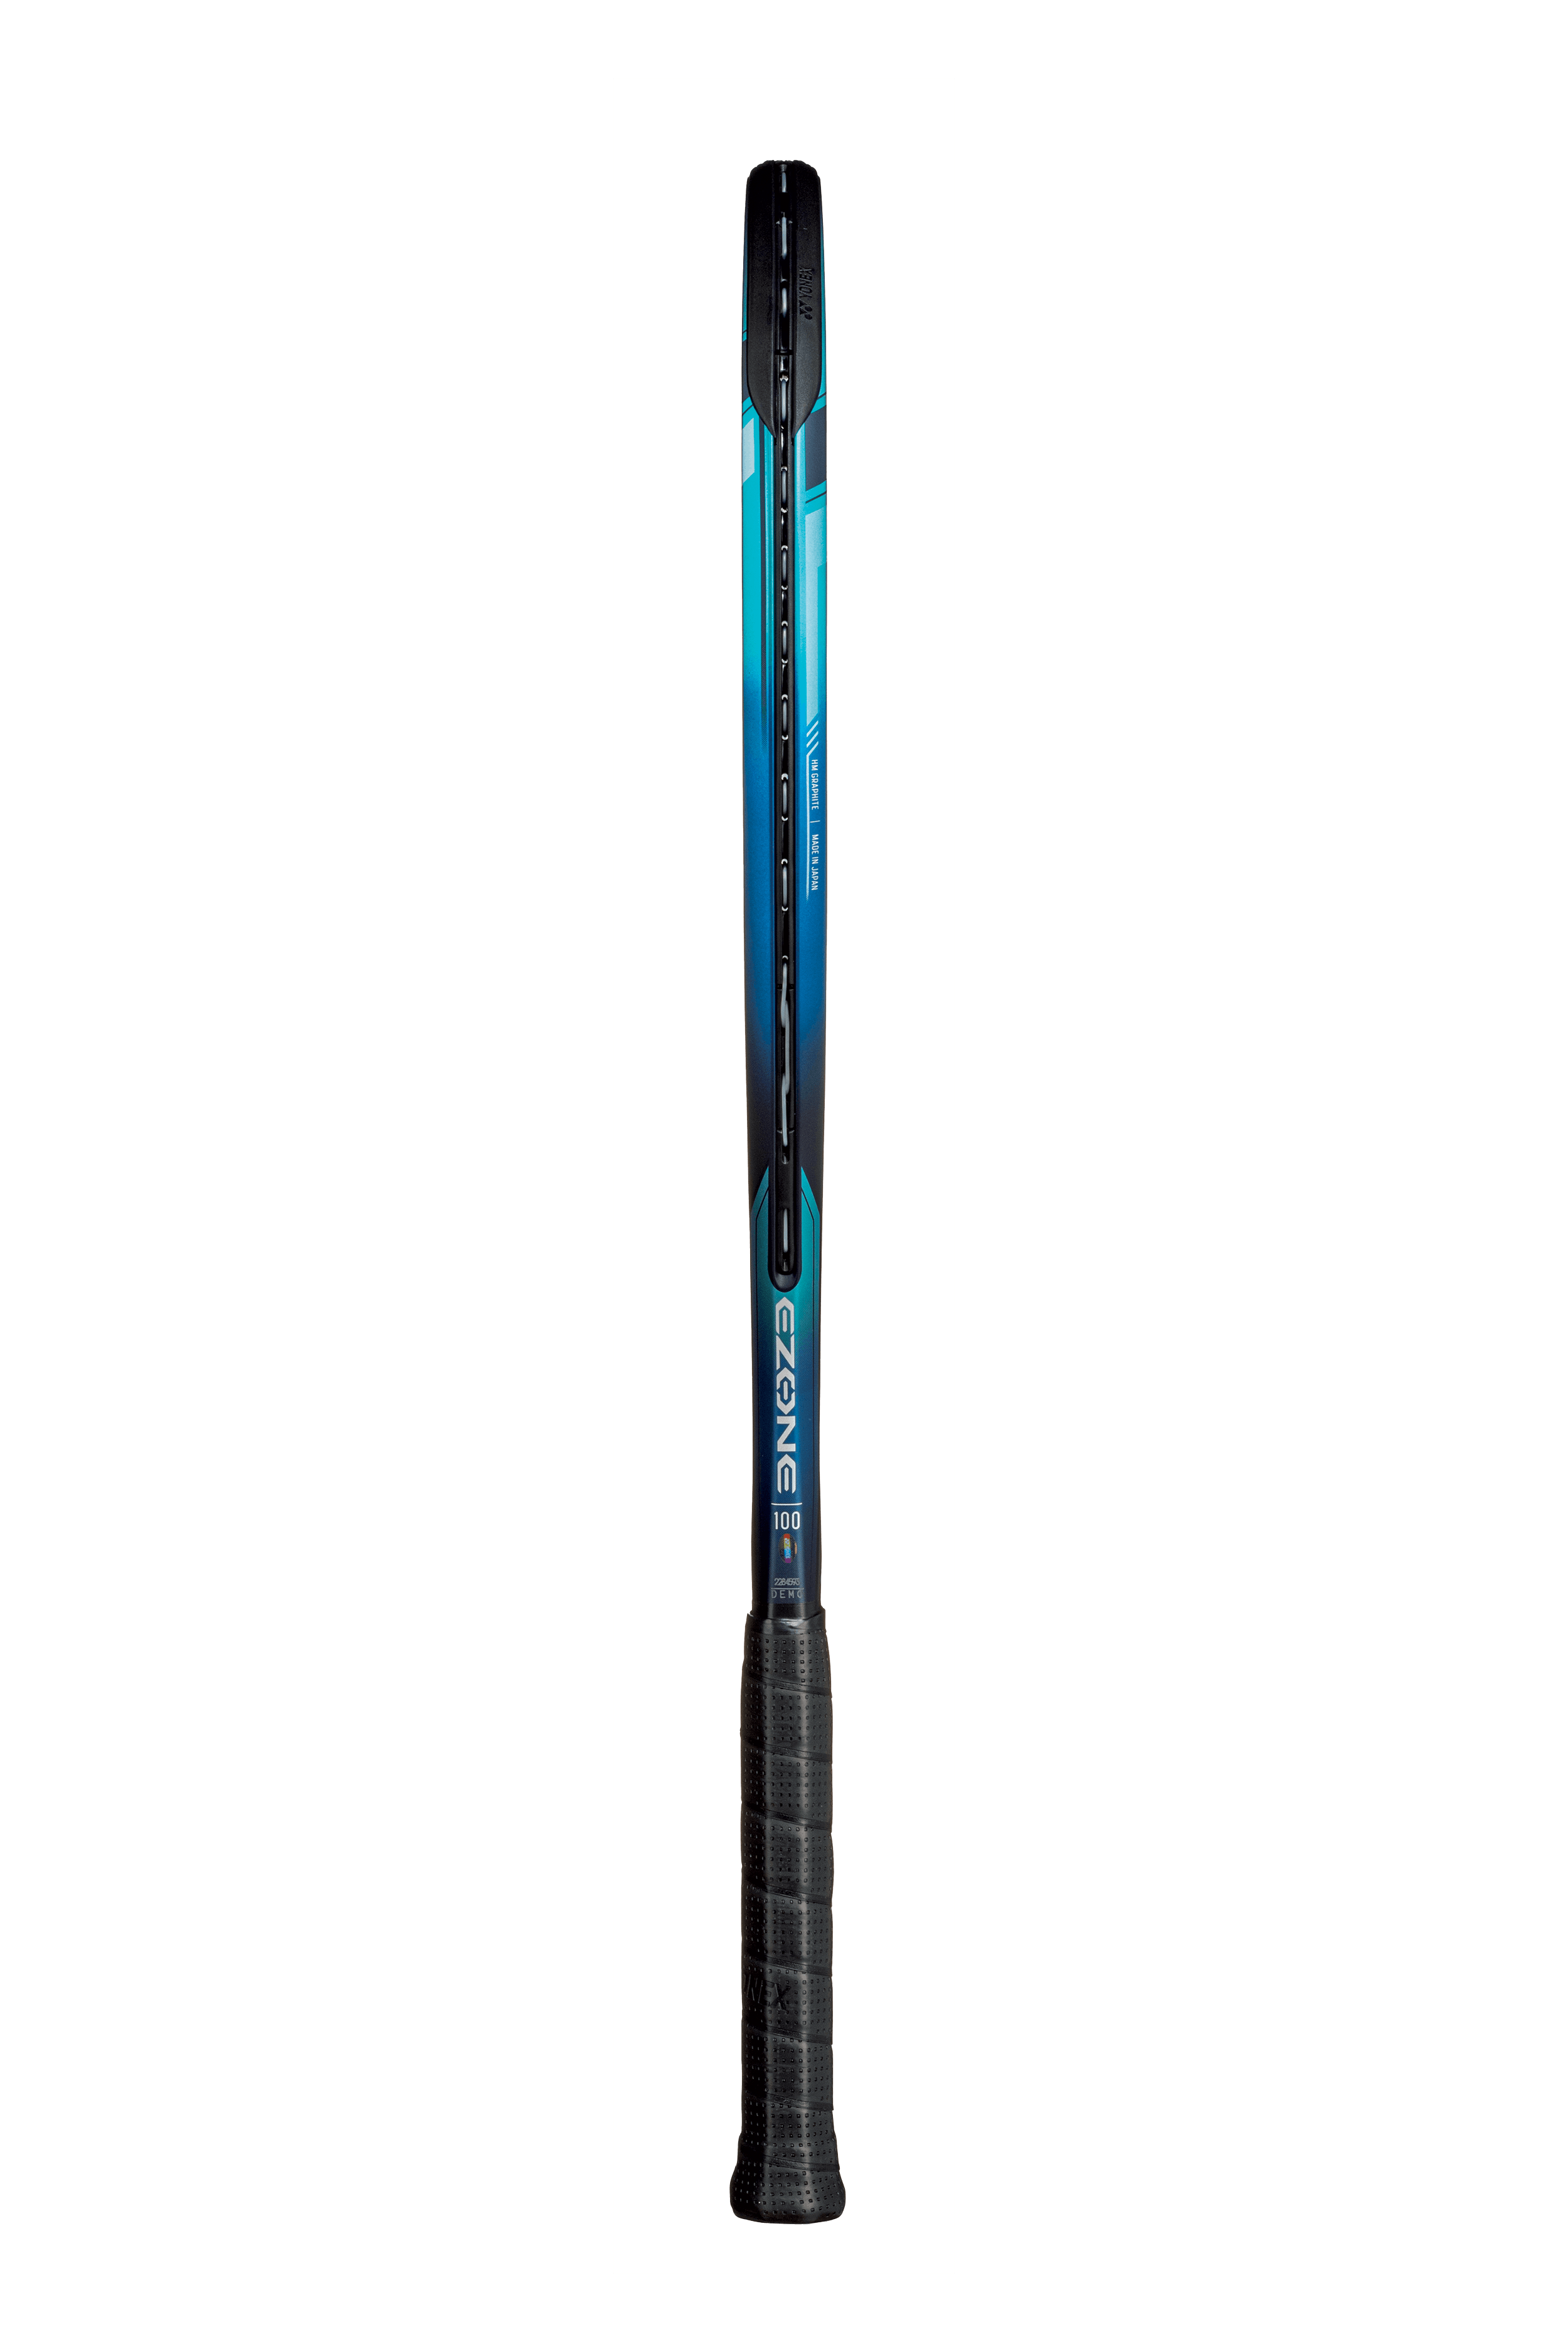 Yonex EZone 100 Racquet · Unstrung